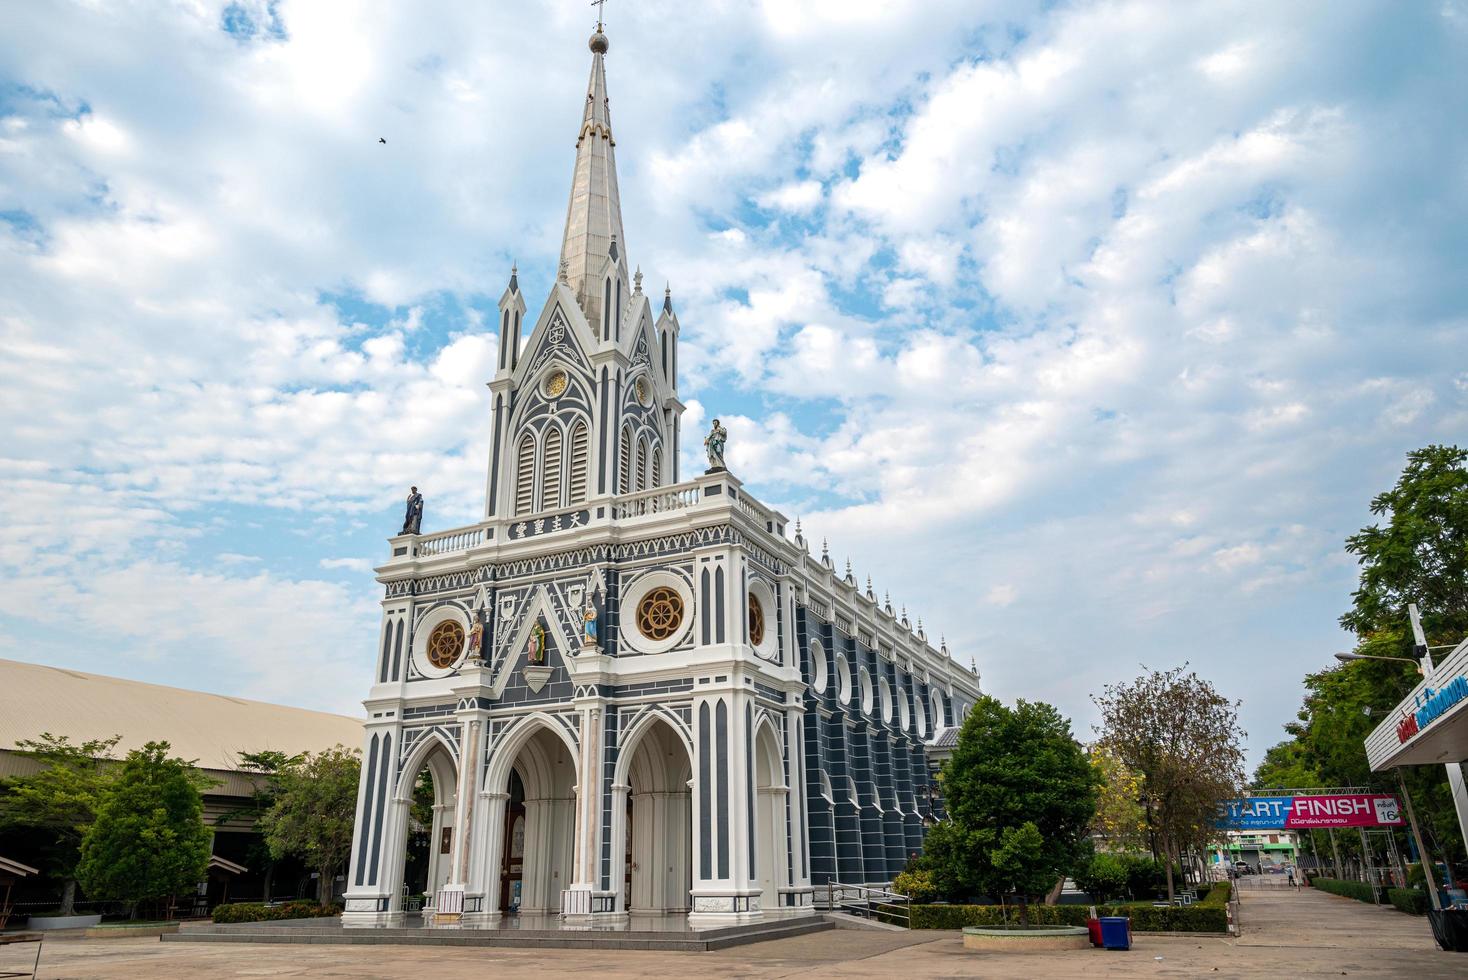 geboorte van onze lieve vrouw kathedraal is een katholieke kerk in de provincie samut songkhram, thailand. De kerk is een openbare plaats in thailand waar mensen met religieuze overtuigingen samenkomen om rituelen uit te voeren. foto